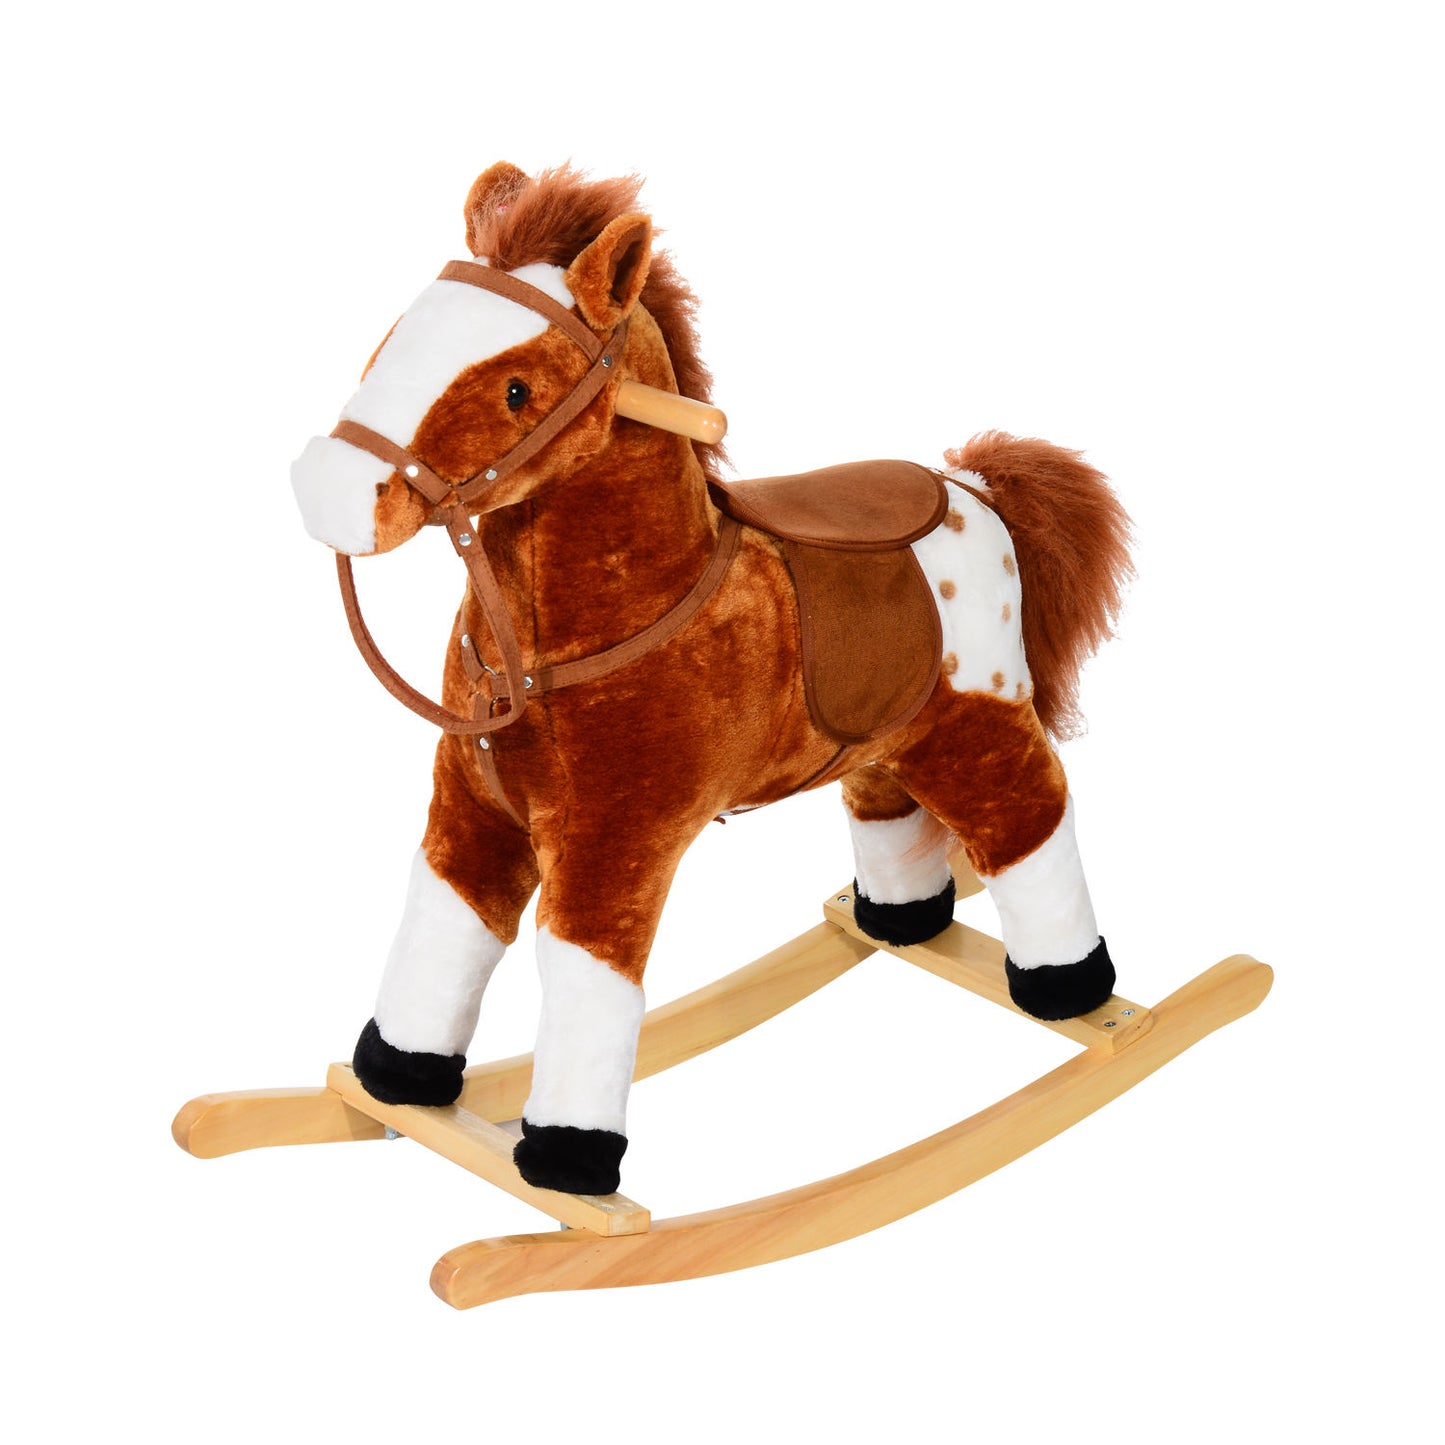 HOMCOM Children Plush Rocking Horse with Sound-Brown